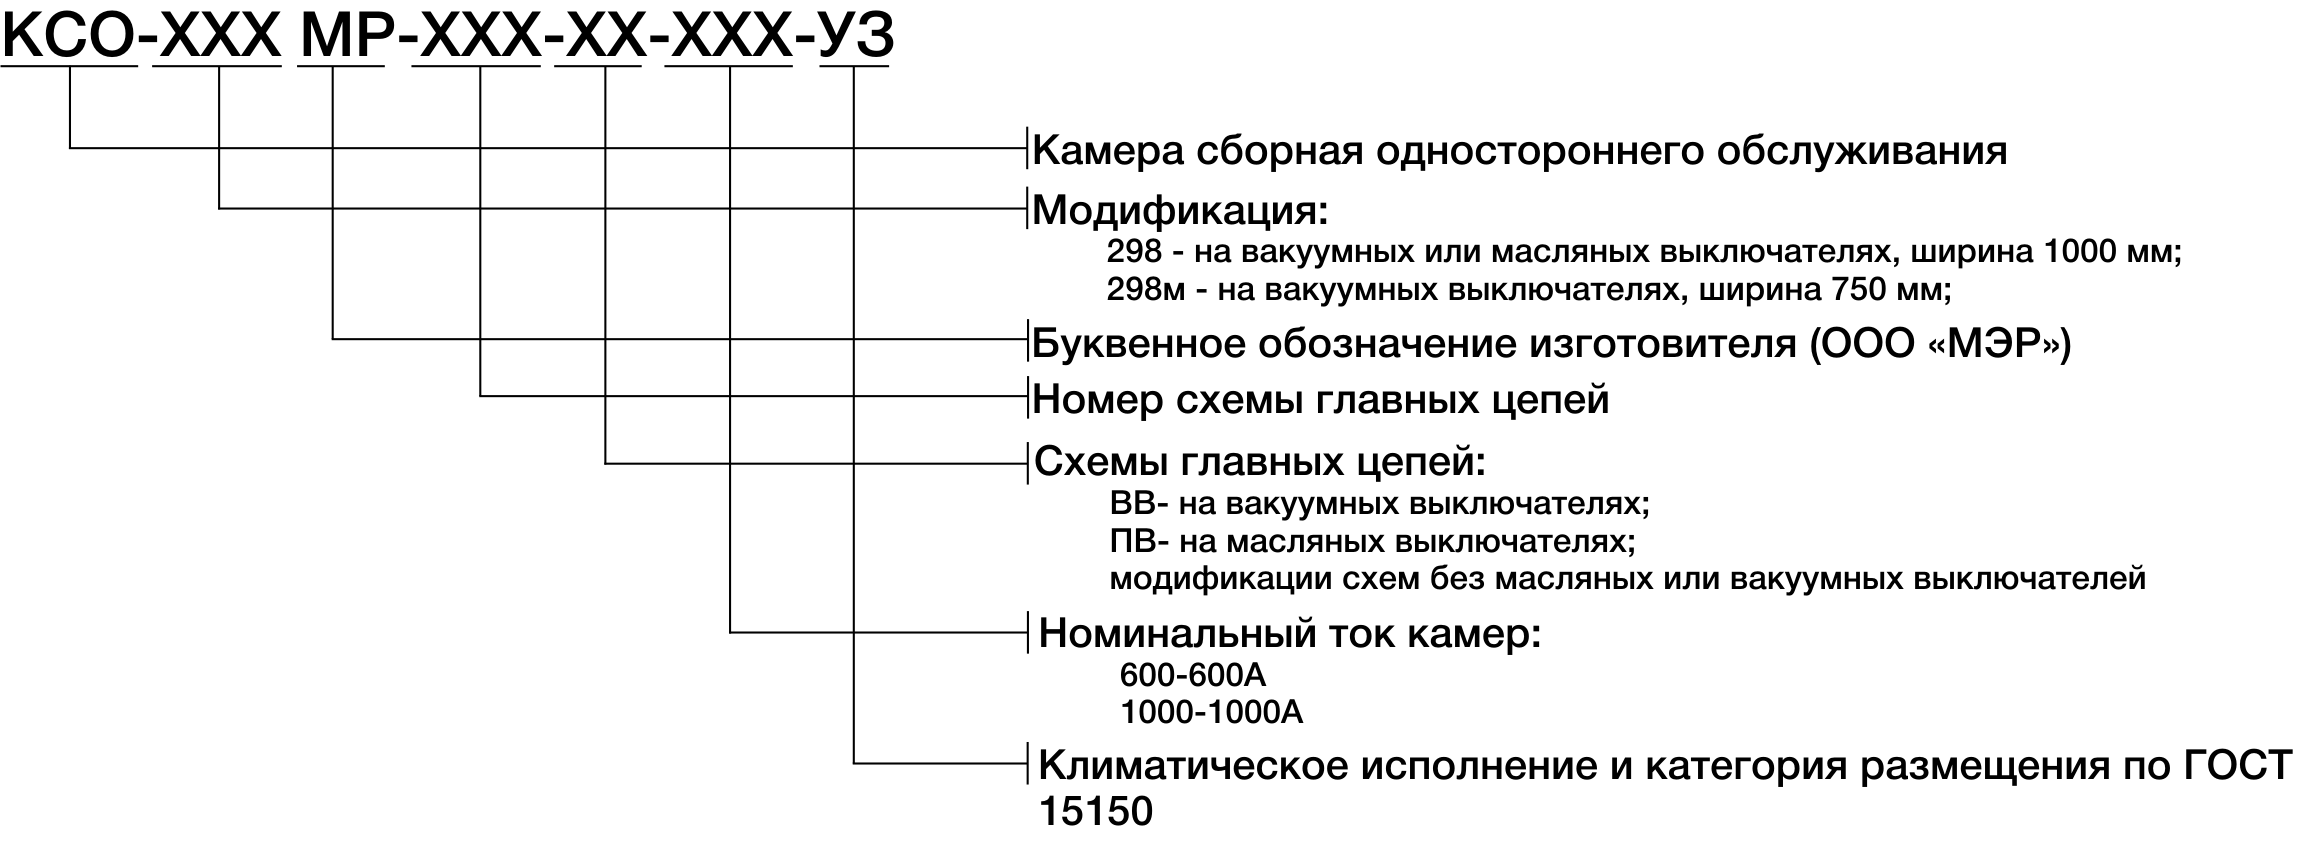 Структура условного обозначения КСО-298МР